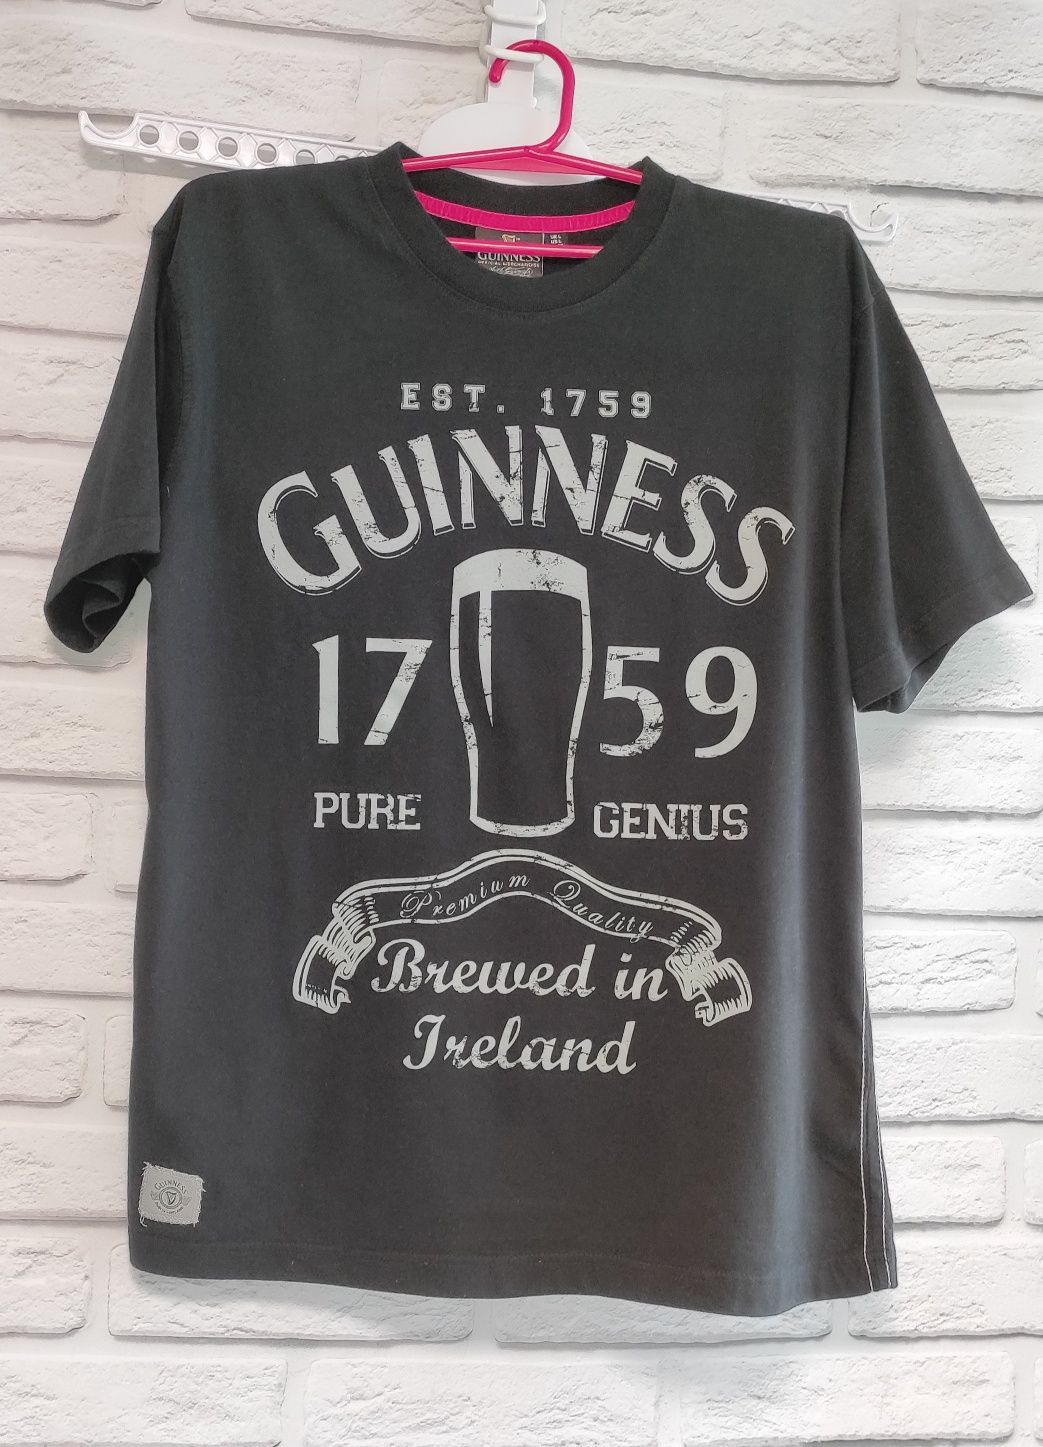 Качественная футболка Guinness оригинал мерч, размер L